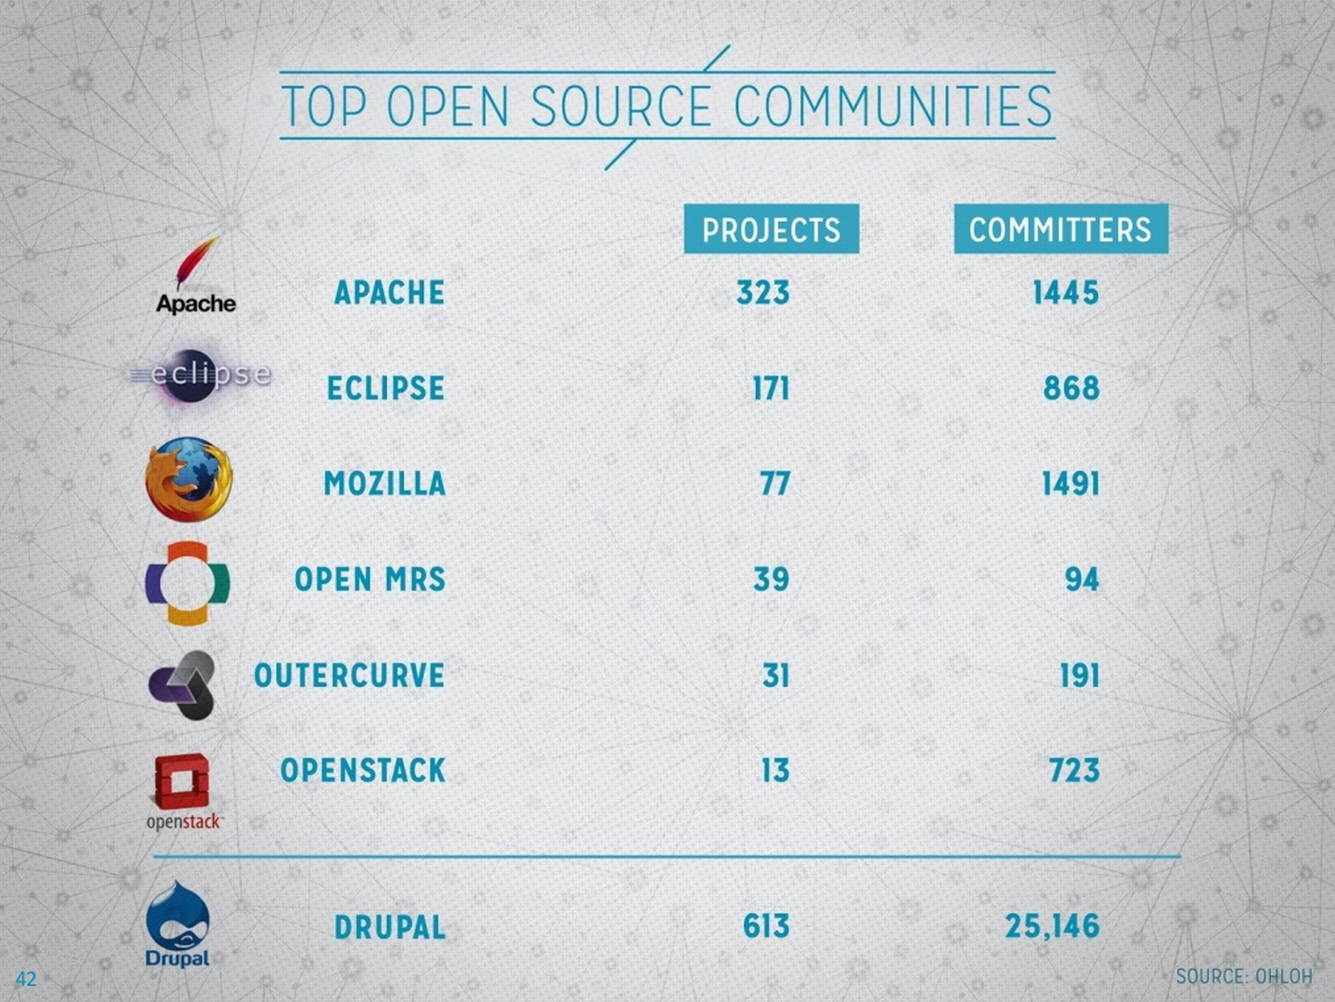 Drupal's community is enormous